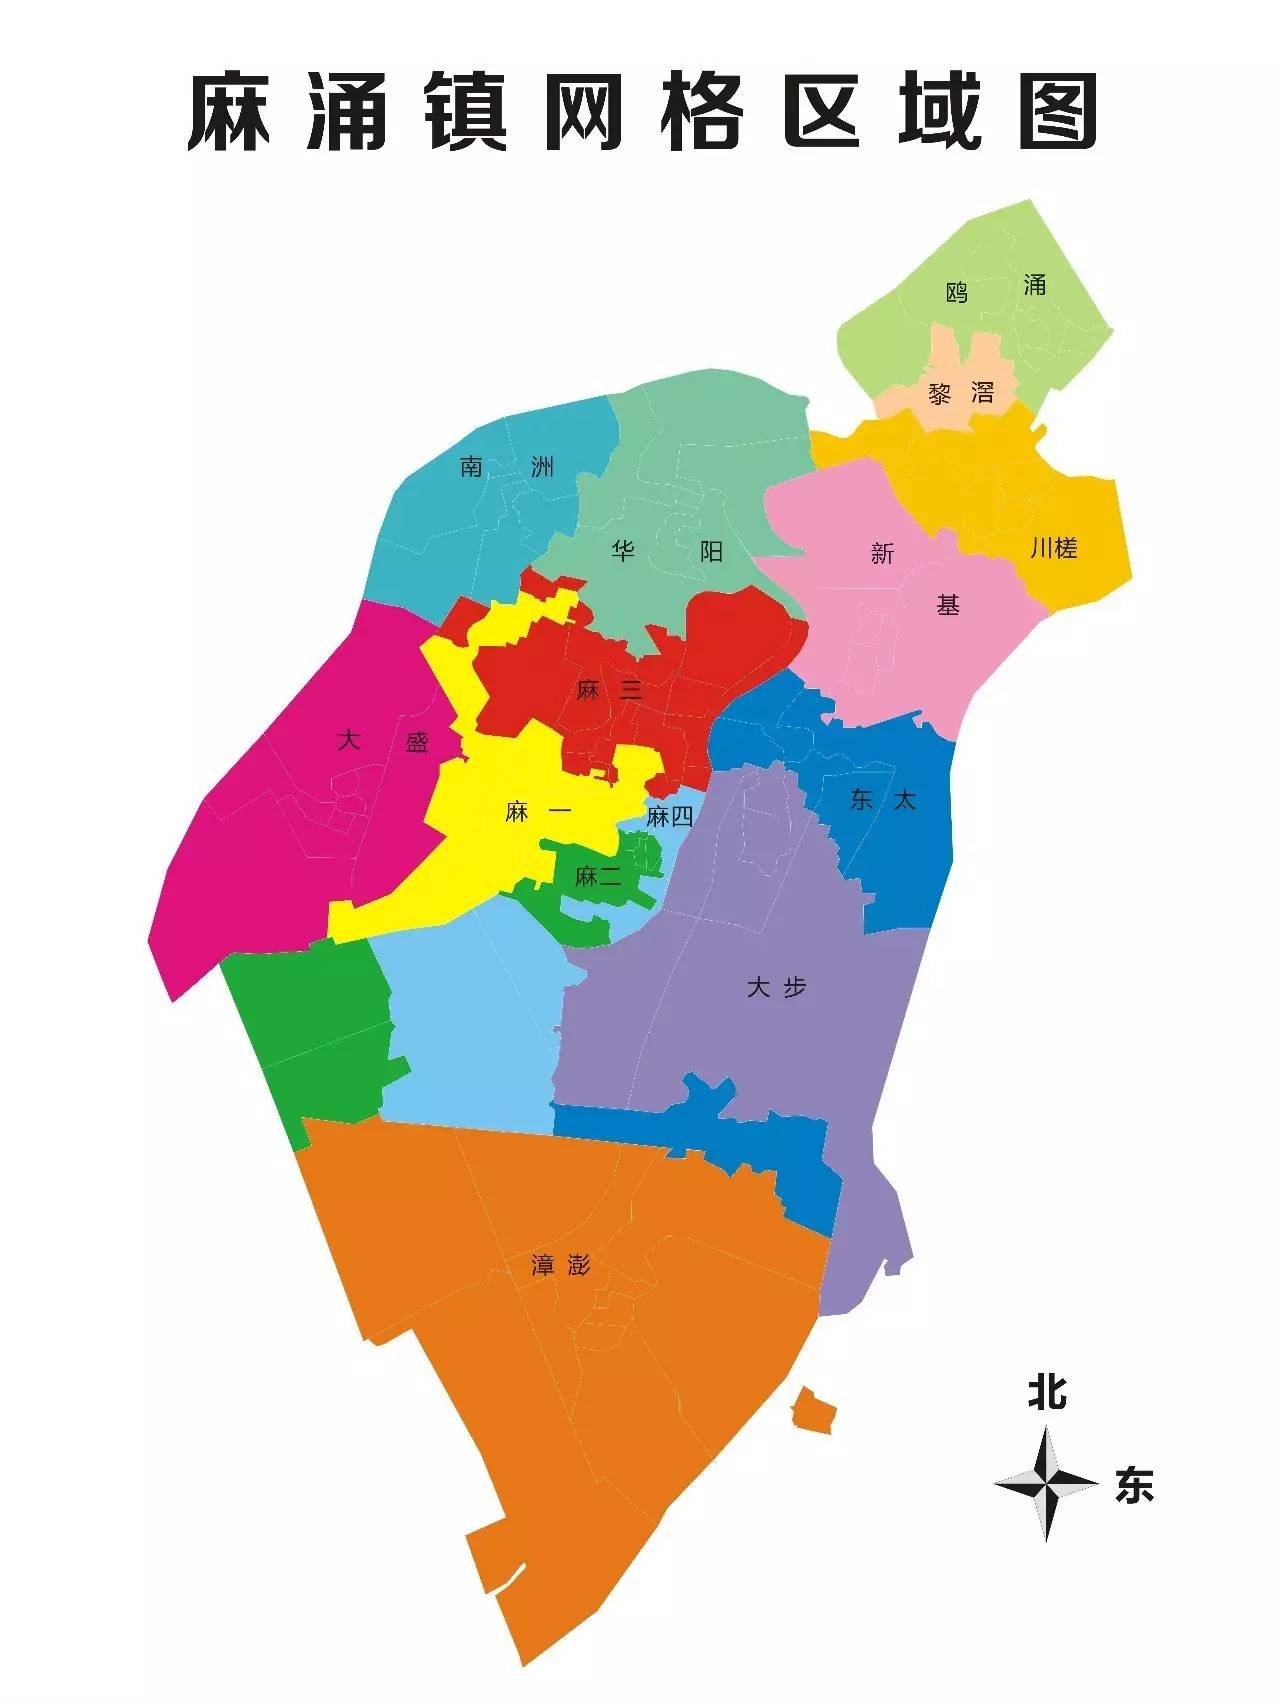 截止至2017年5月底,麻涌已全面完成镇,村(社区)两级指挥调度工作平台